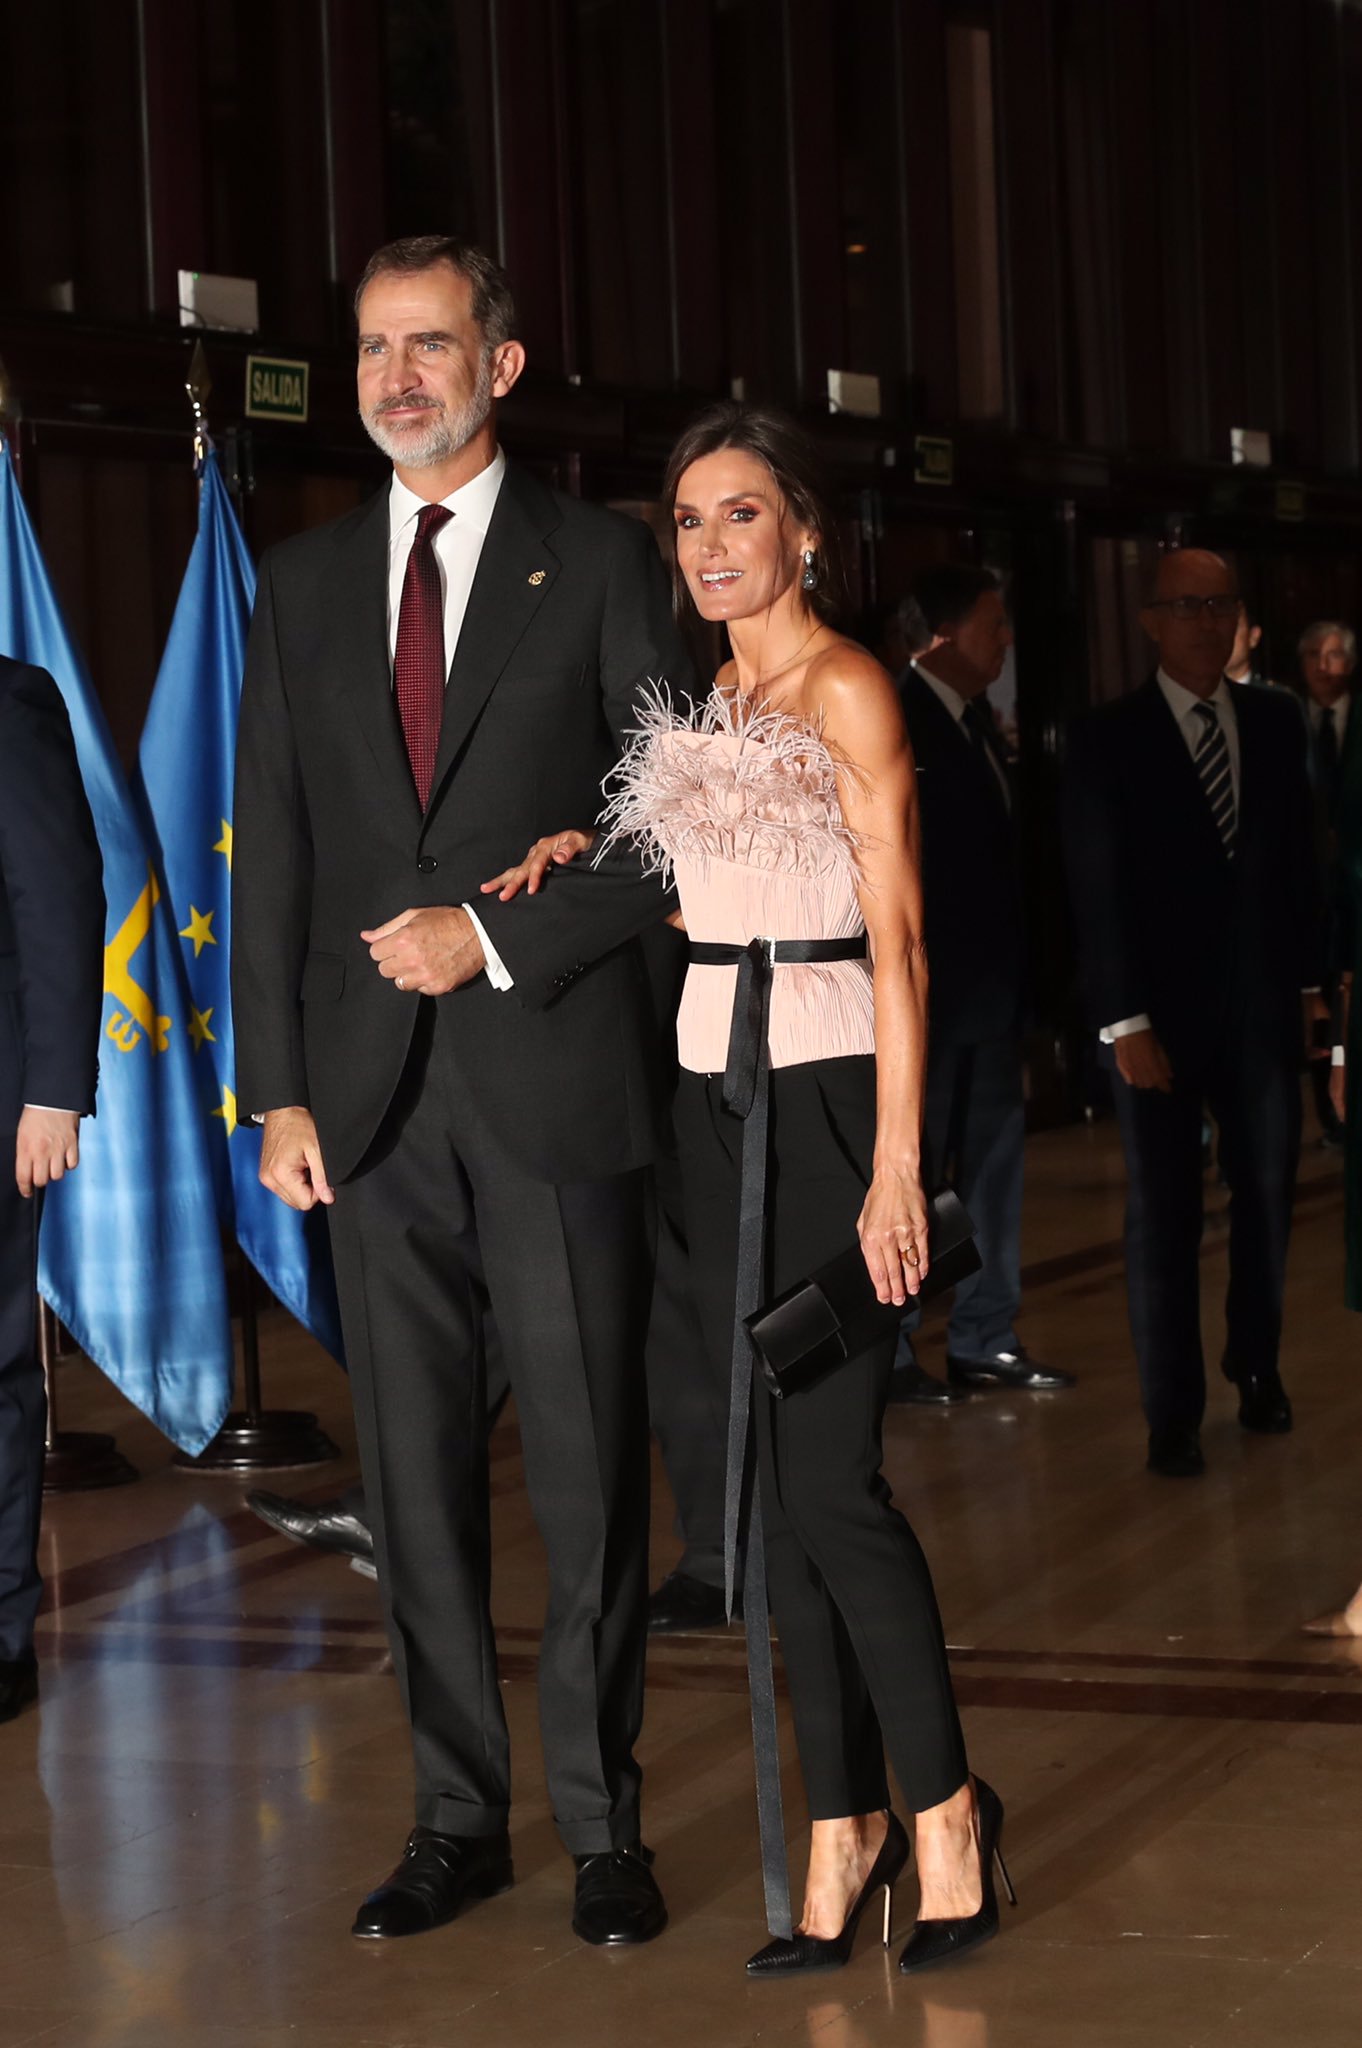 La reina sorprende con un cuerpo con plumas en el concierto del Premio Princesa de Asturias